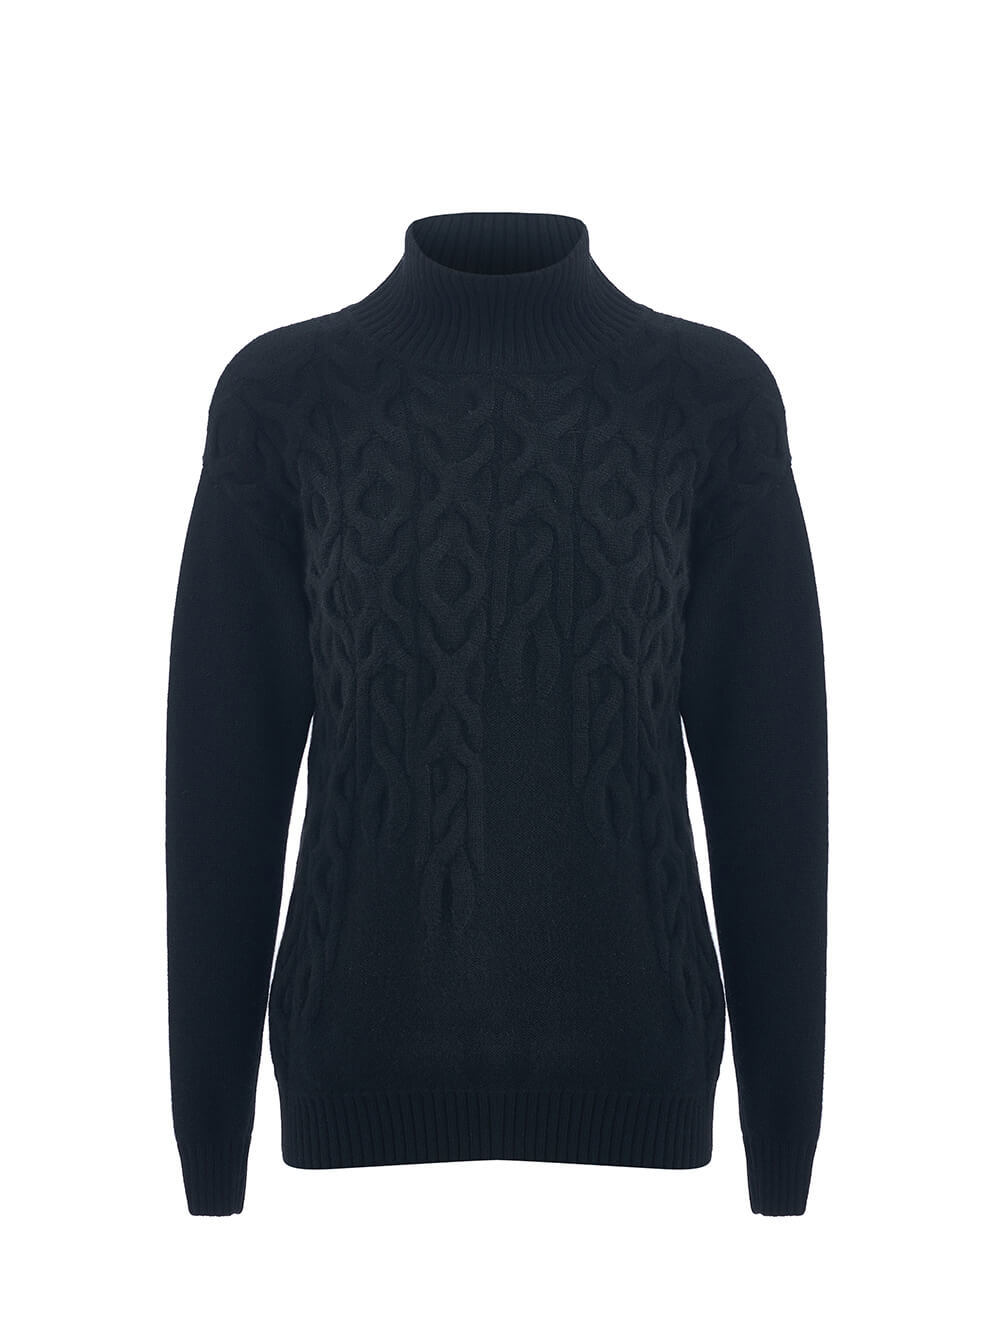 Женский свитер черного цвета из 100% кашемира